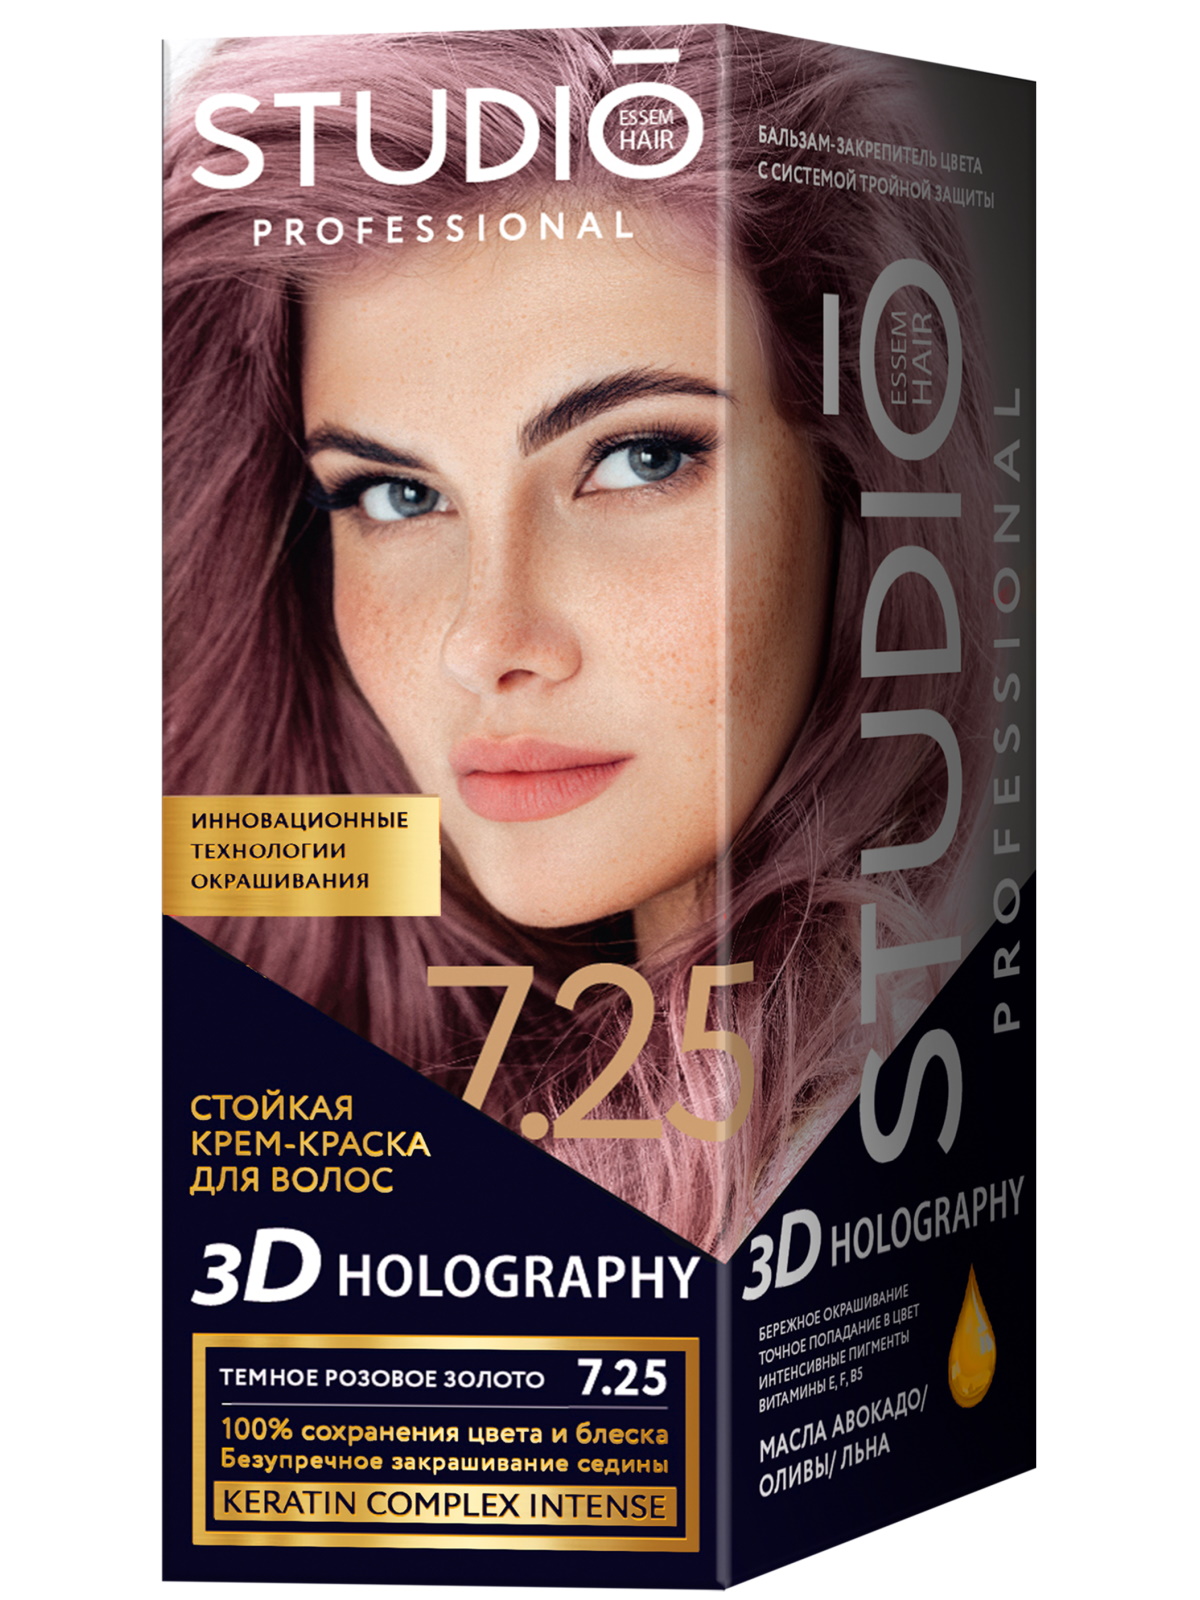 Комплект 3D HOLOGRAPHY STUDIO PROFESSIONAL 7.25 темное розовое золото 2*50+15 мл стойкая крем краска для волос studio professional 3d holography тон 7 35 ярко рыжий